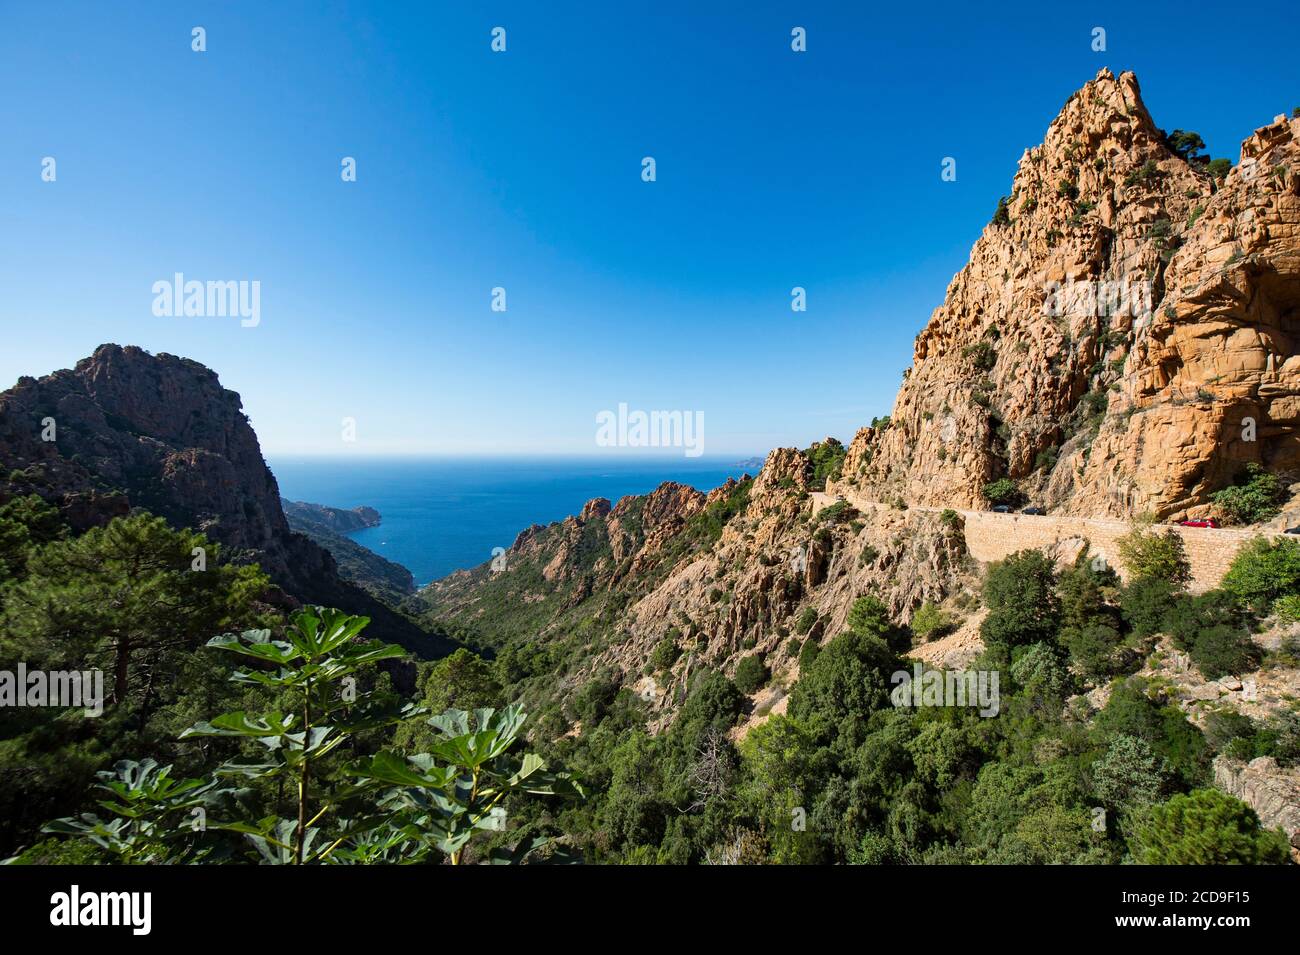 Frankreich, Corse du Sud, Porto, Golf von Porto die pittoreske Route der Calanches von Piana, die aus plutonischem Felsen gebildet wurde, wurde von der UNESCO zum Weltkulturerbe erklärt Stockfoto